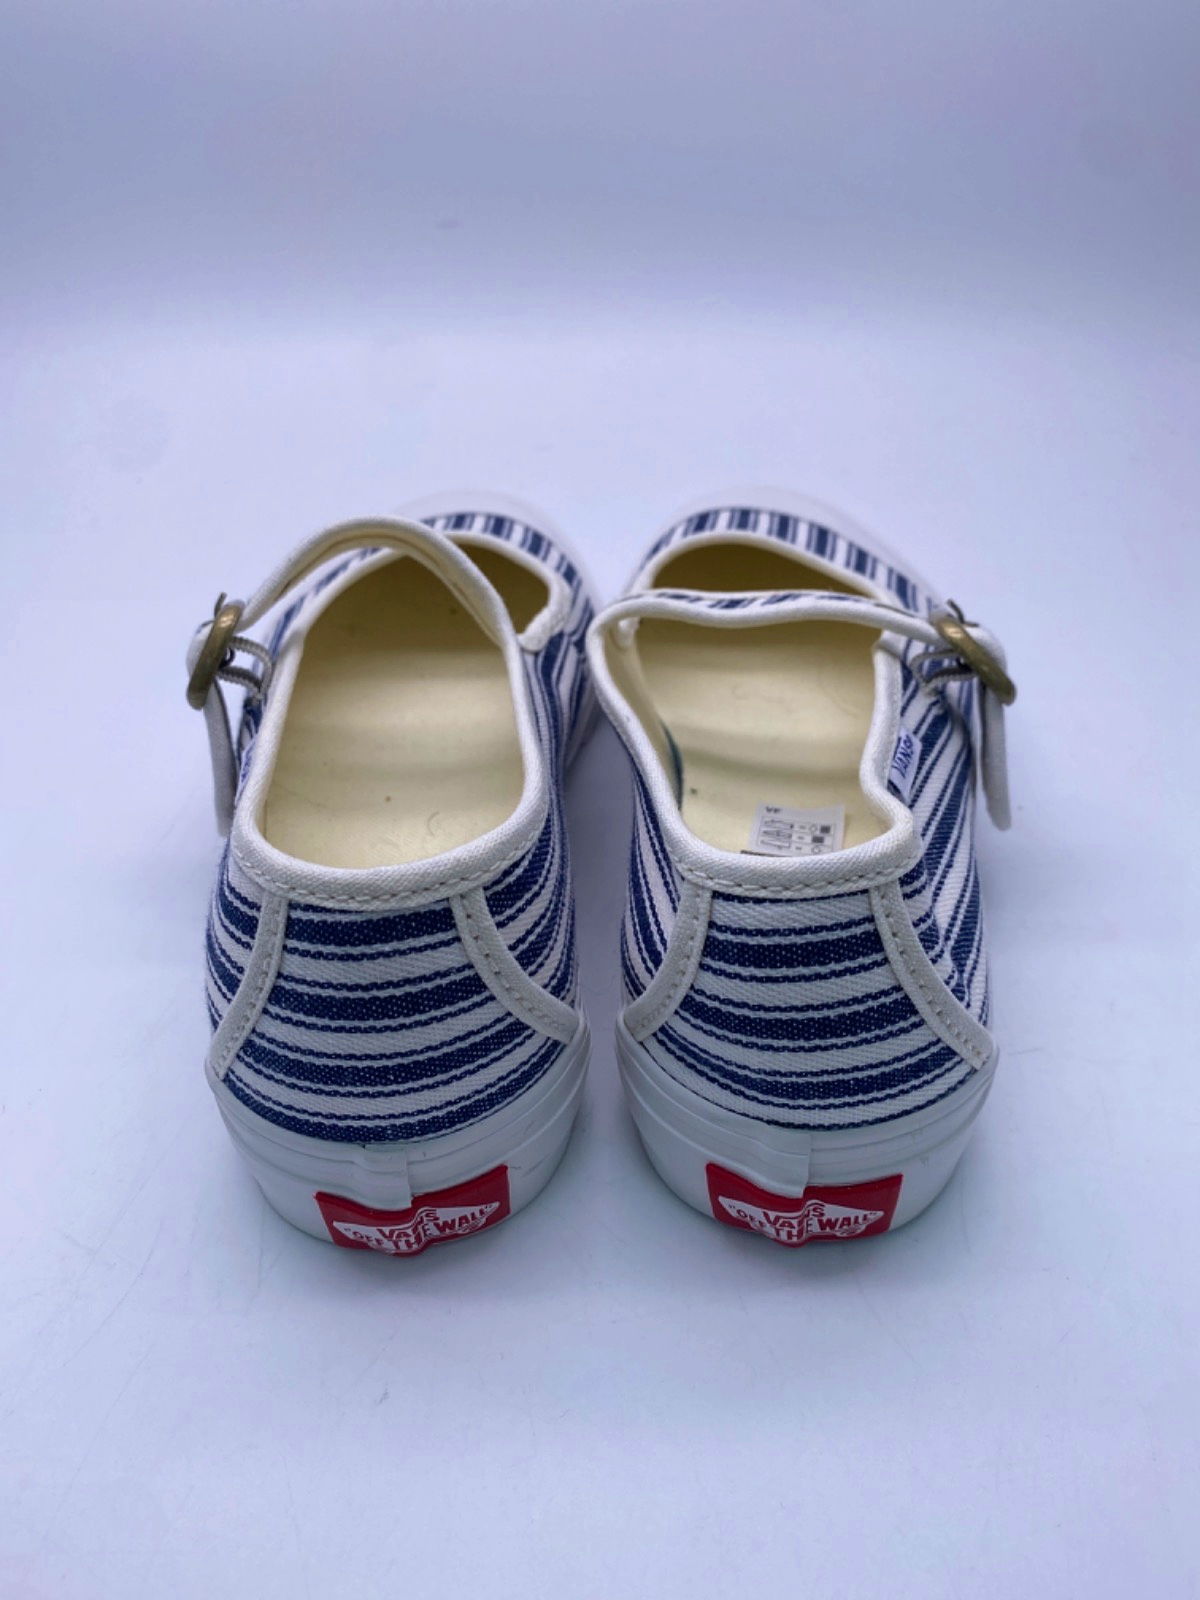 Vans White/Blue Striped Mary Jane Slip-Ons UK 4